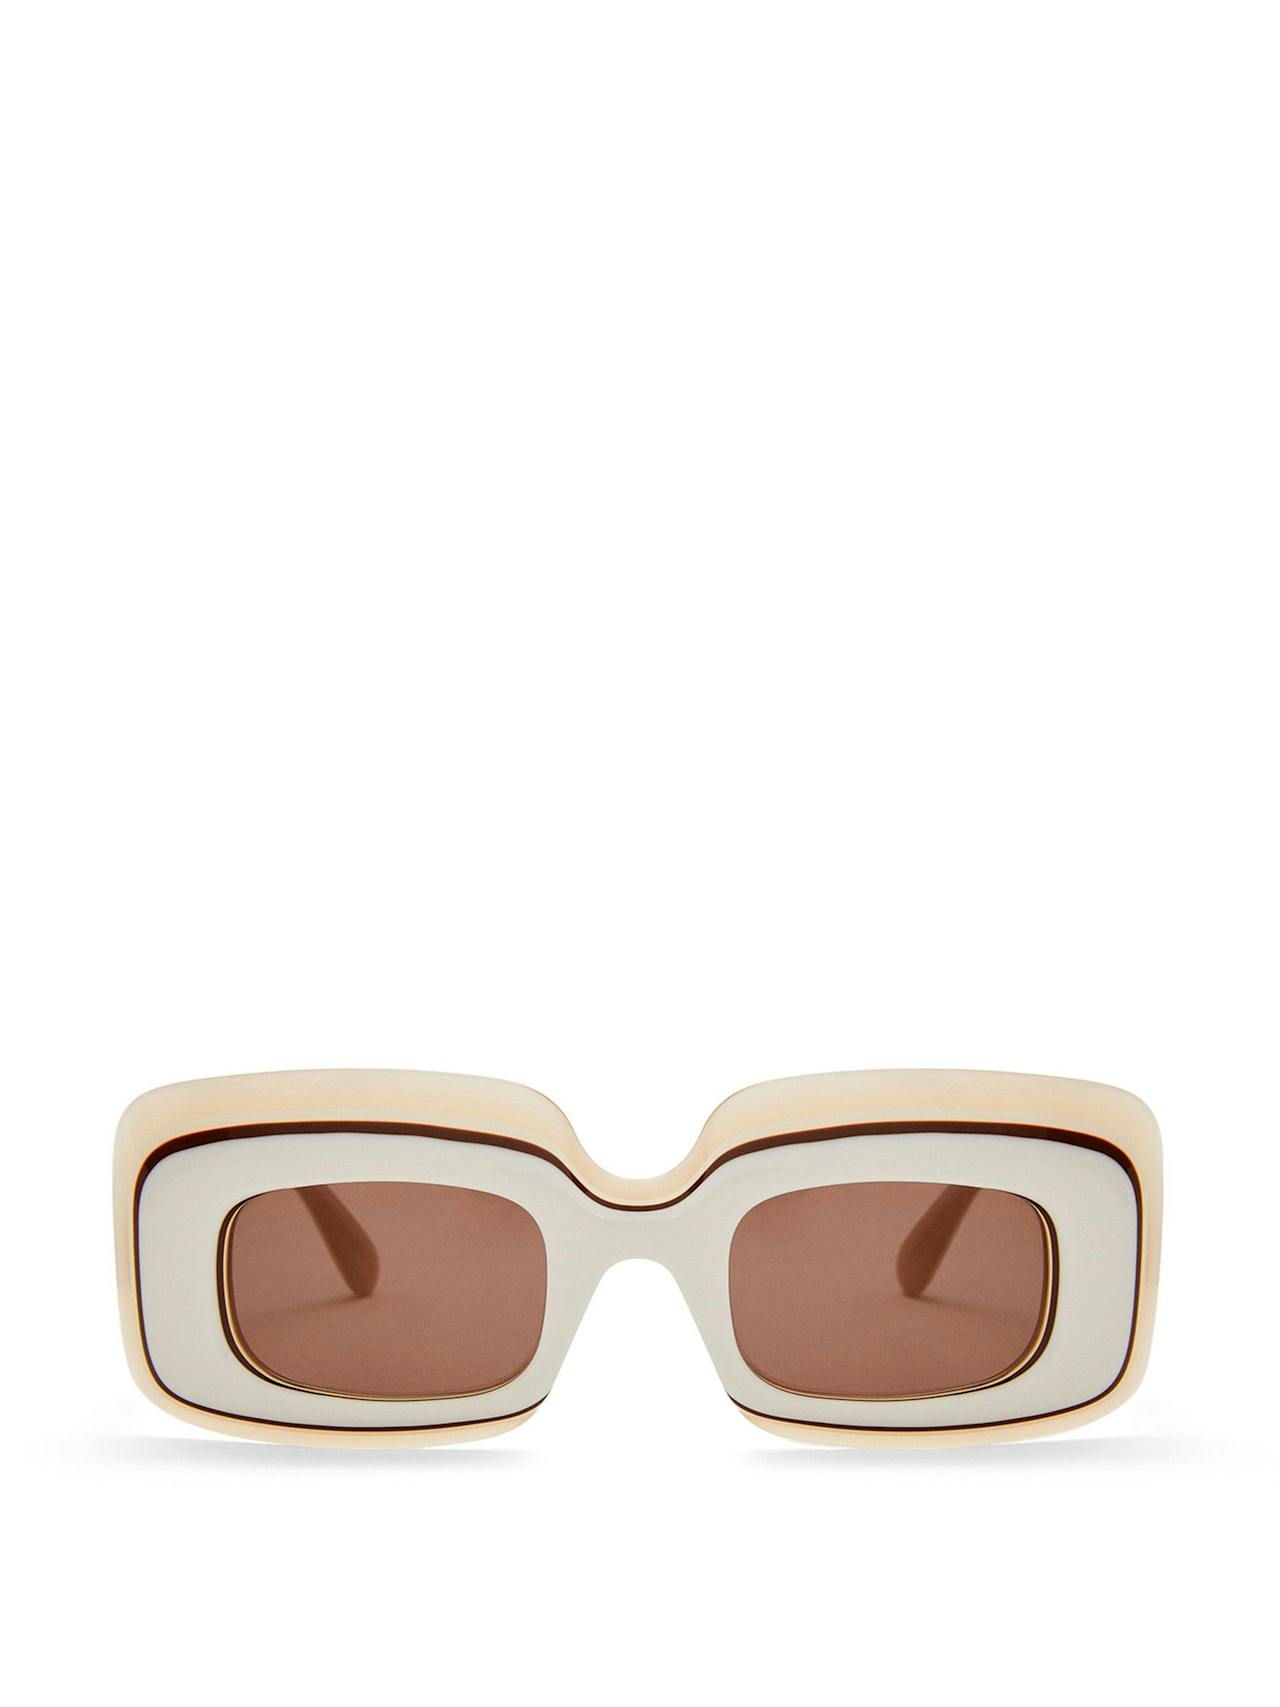 Multilayer rectangular sunglasses in acetate